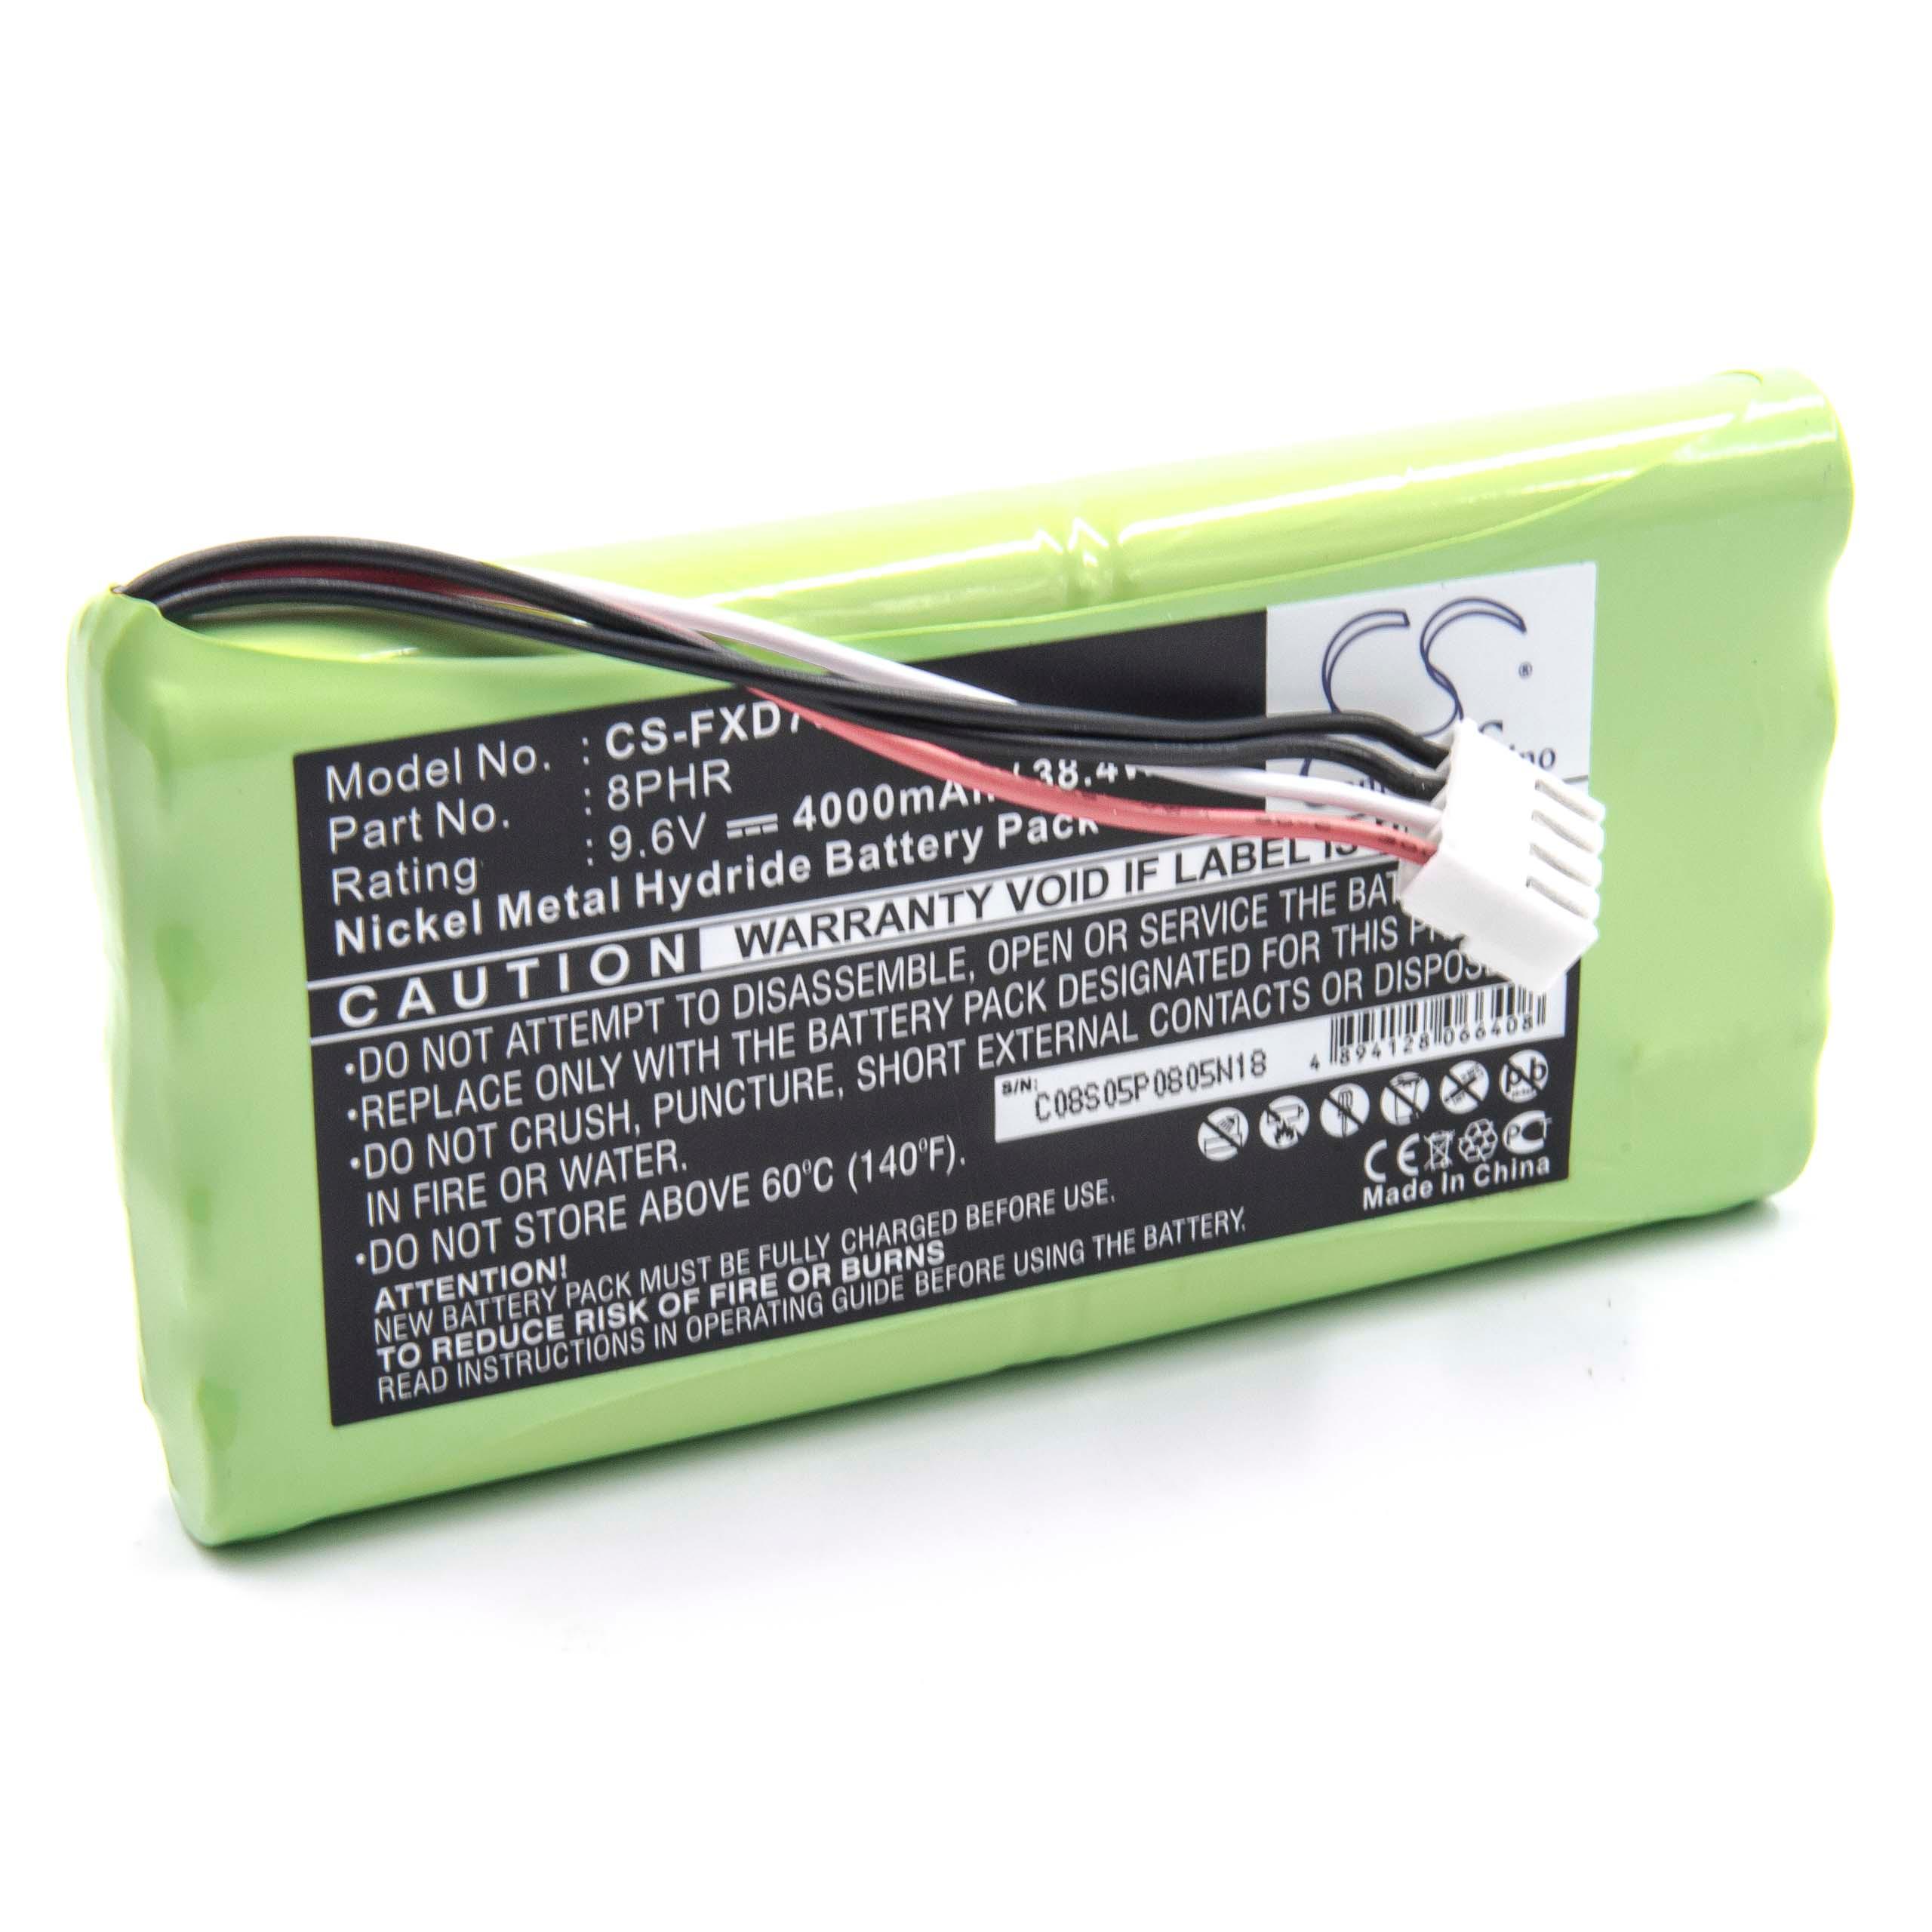 Batterie remplace 8PHR pour appareil médical - 4000mAh 9,6V NiMH